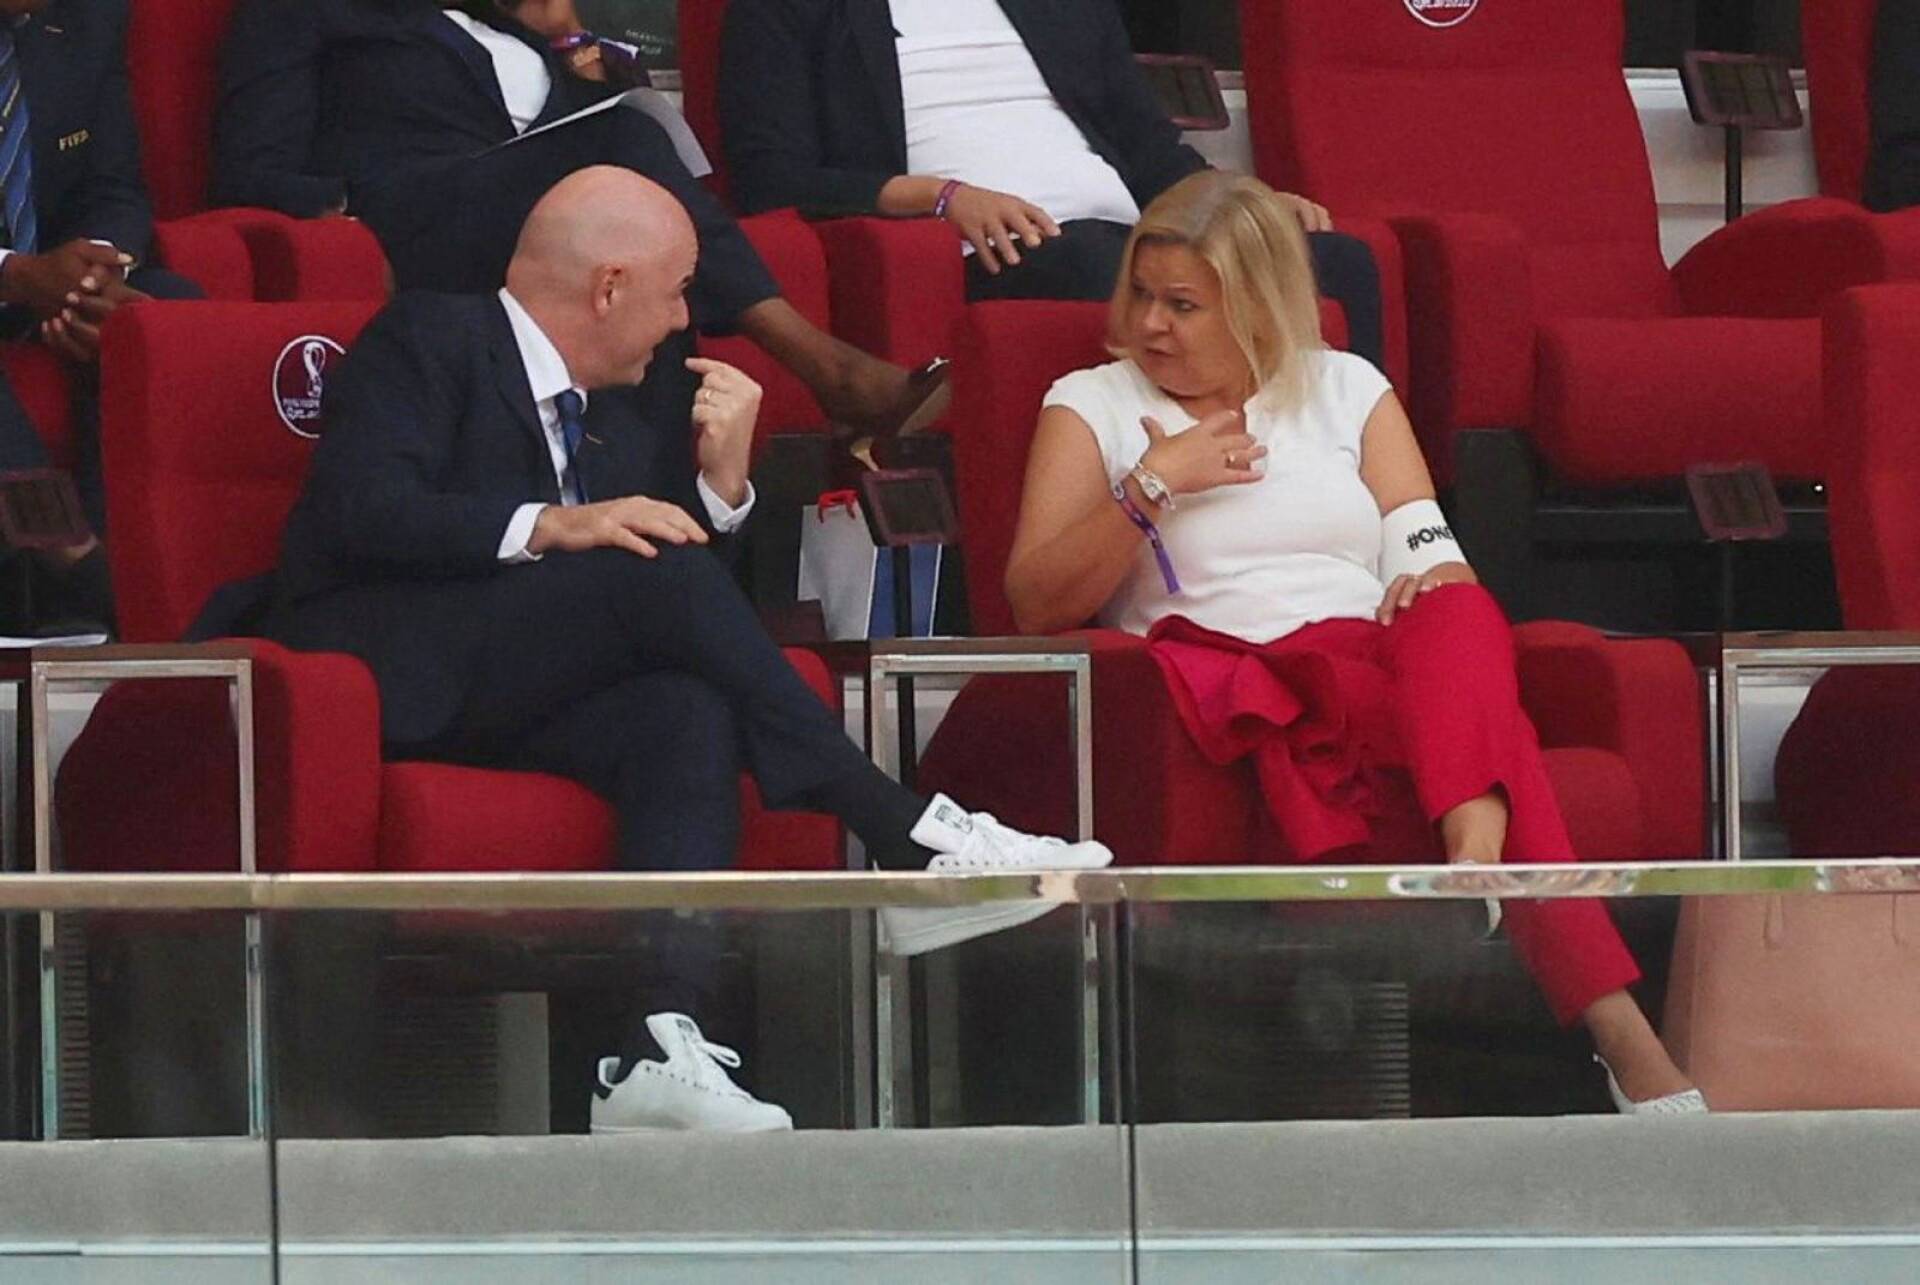 Kansainvälisen jalkapalloliiton Fifan puheenjohtaja Gianni Infantino keskusteli Saksa-Japani-ottelussa Saksan sisäministerin Nancy Faeserin kanssa, joka oli pukenut oikeaan käteensä One Love -kapteeninauhan.